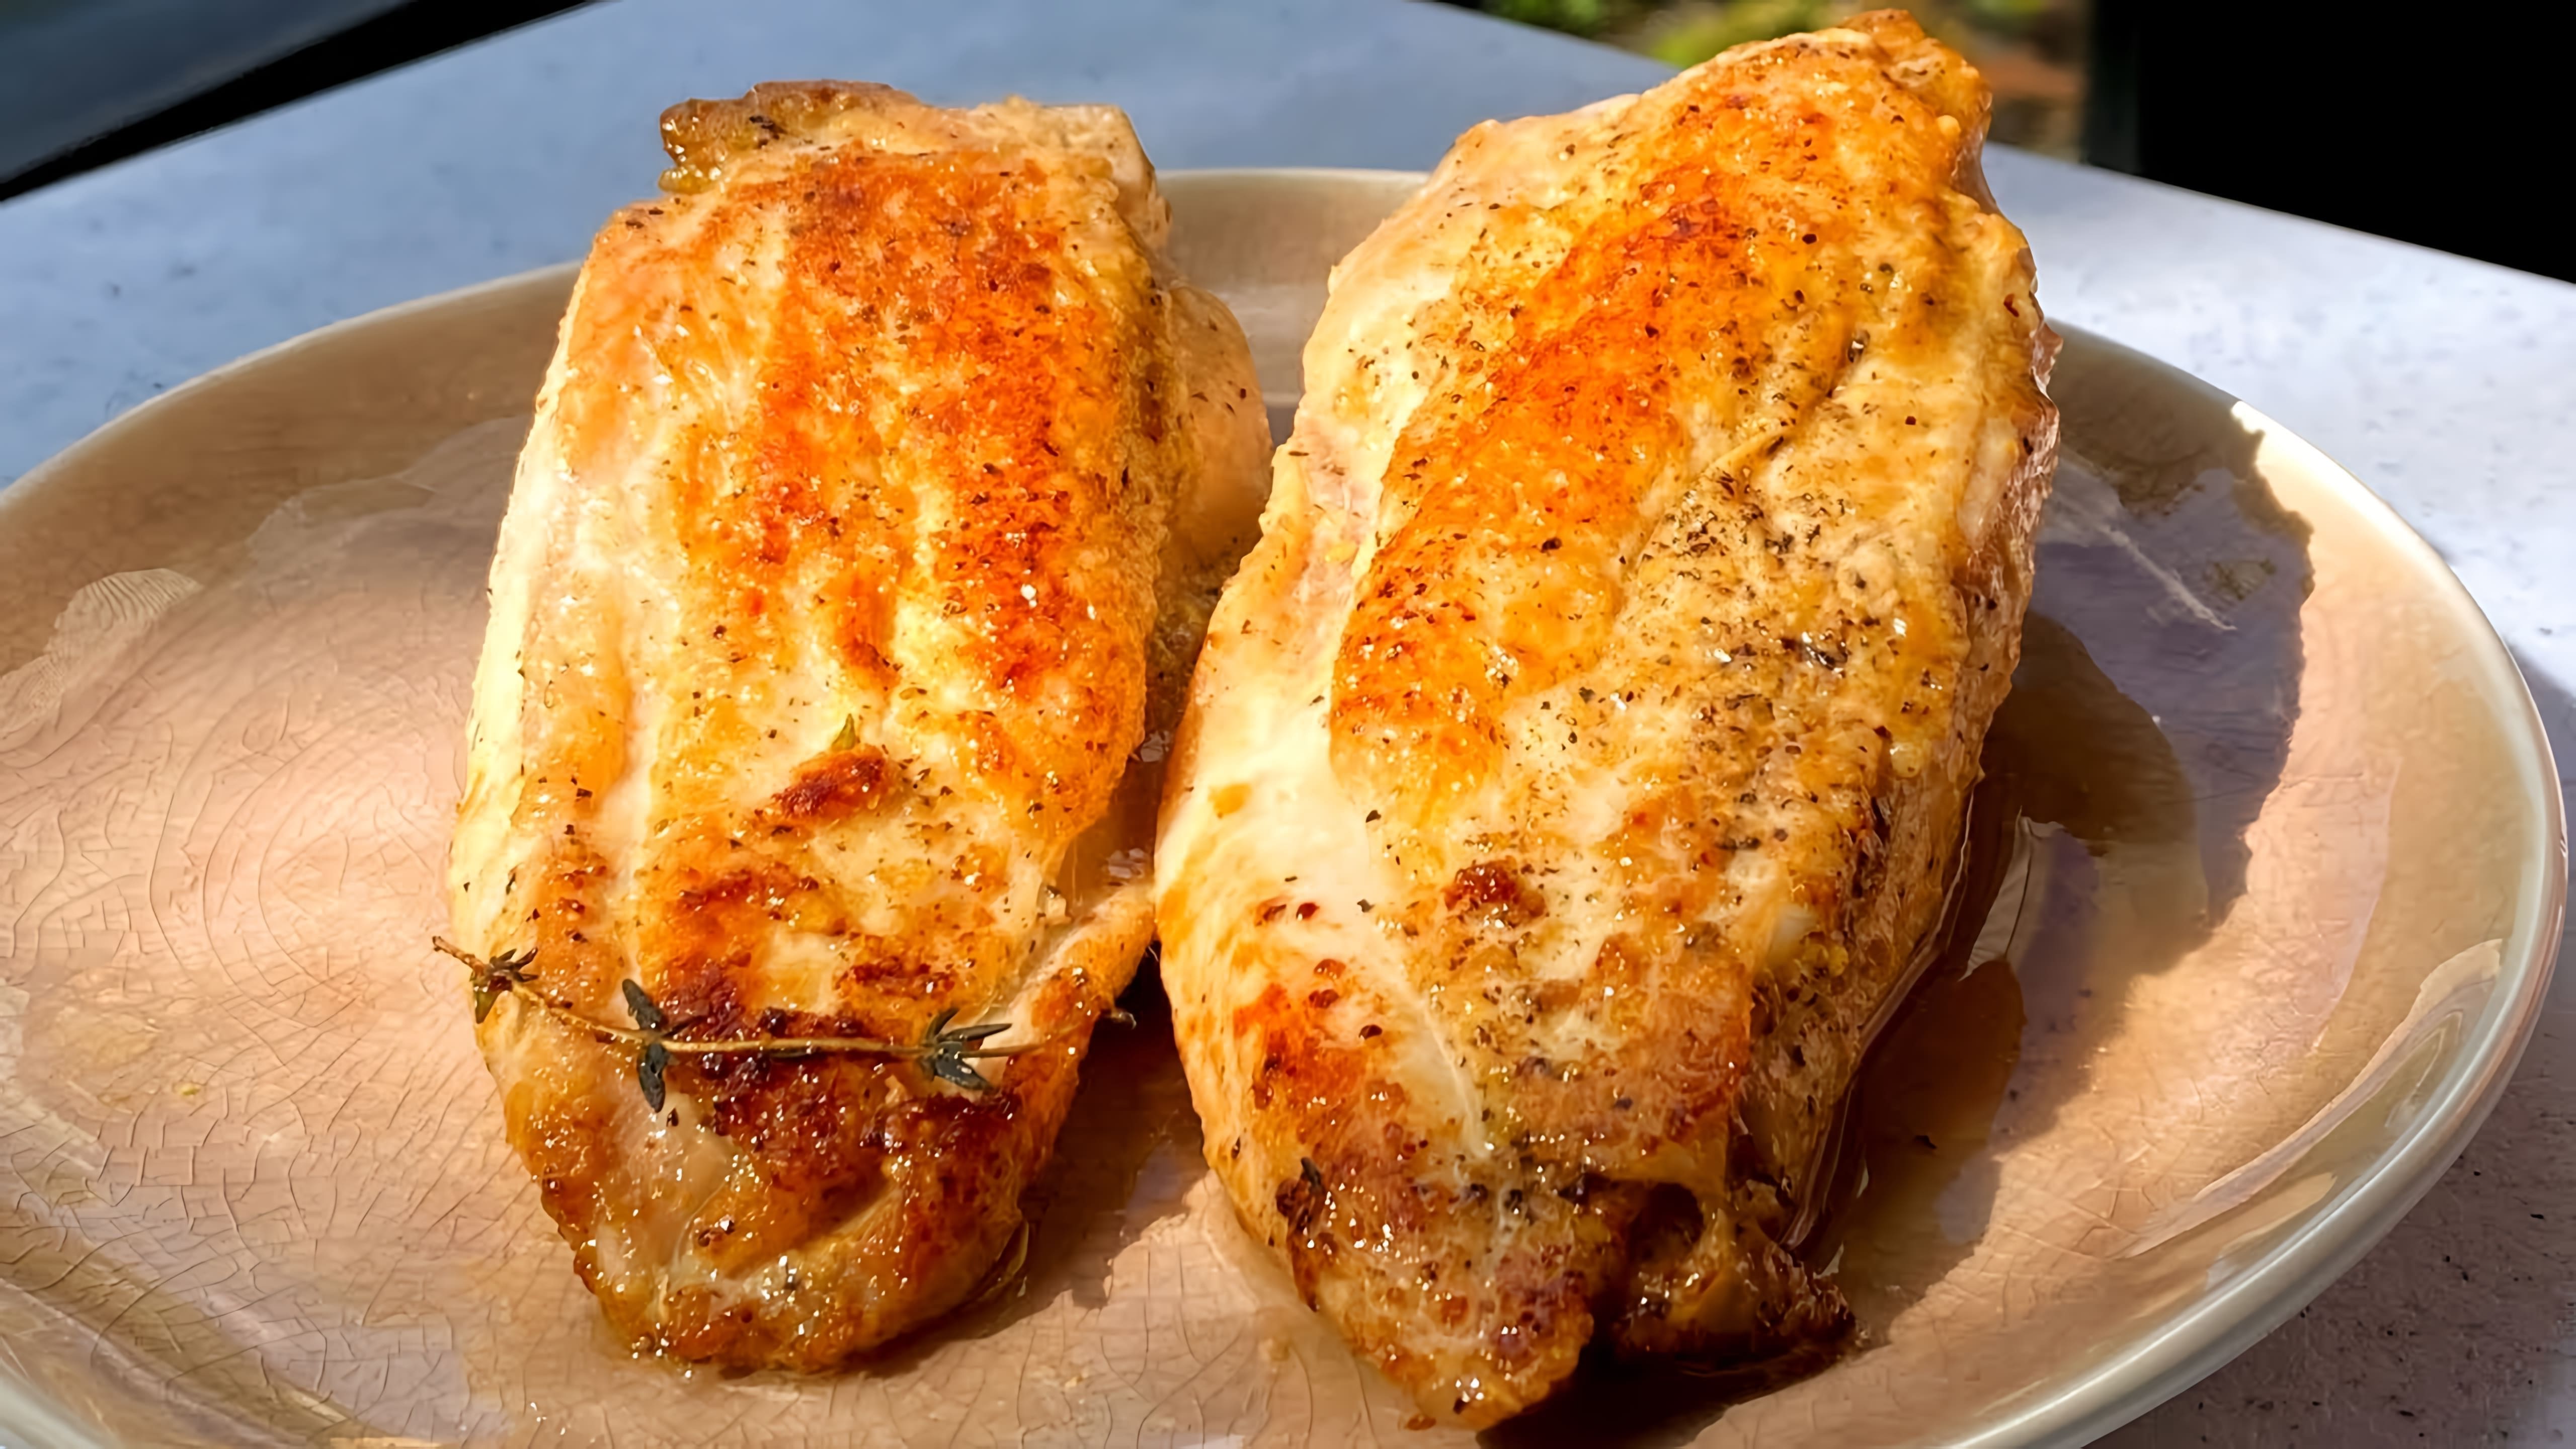 Видео рецепт приготовления куриной грудки, которая получается очень сочной и ароматной